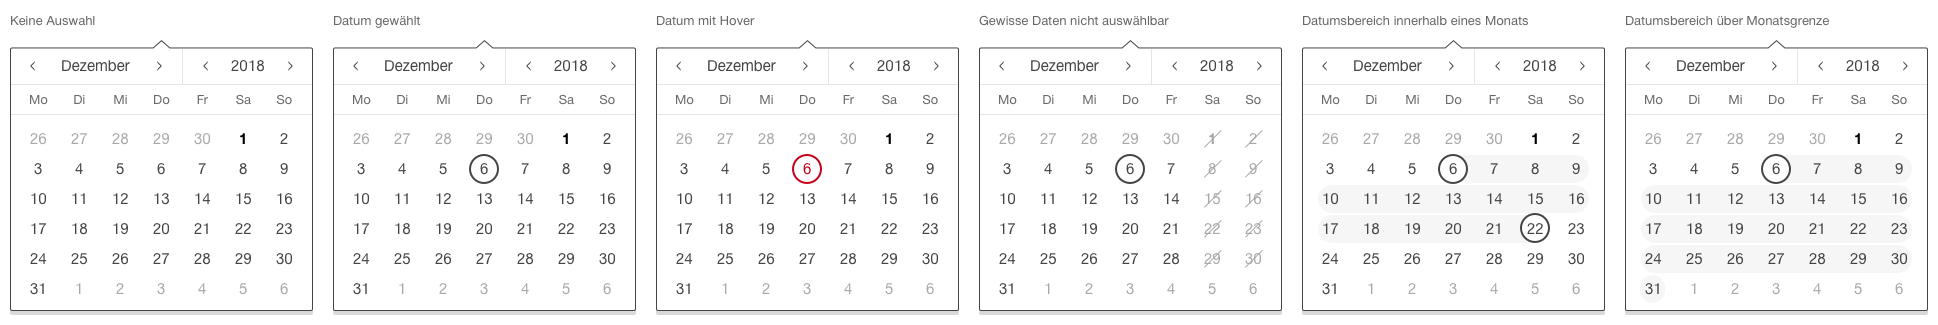 Darstellung der Komponente Datumsauswahl mit Kalenderdarstellung